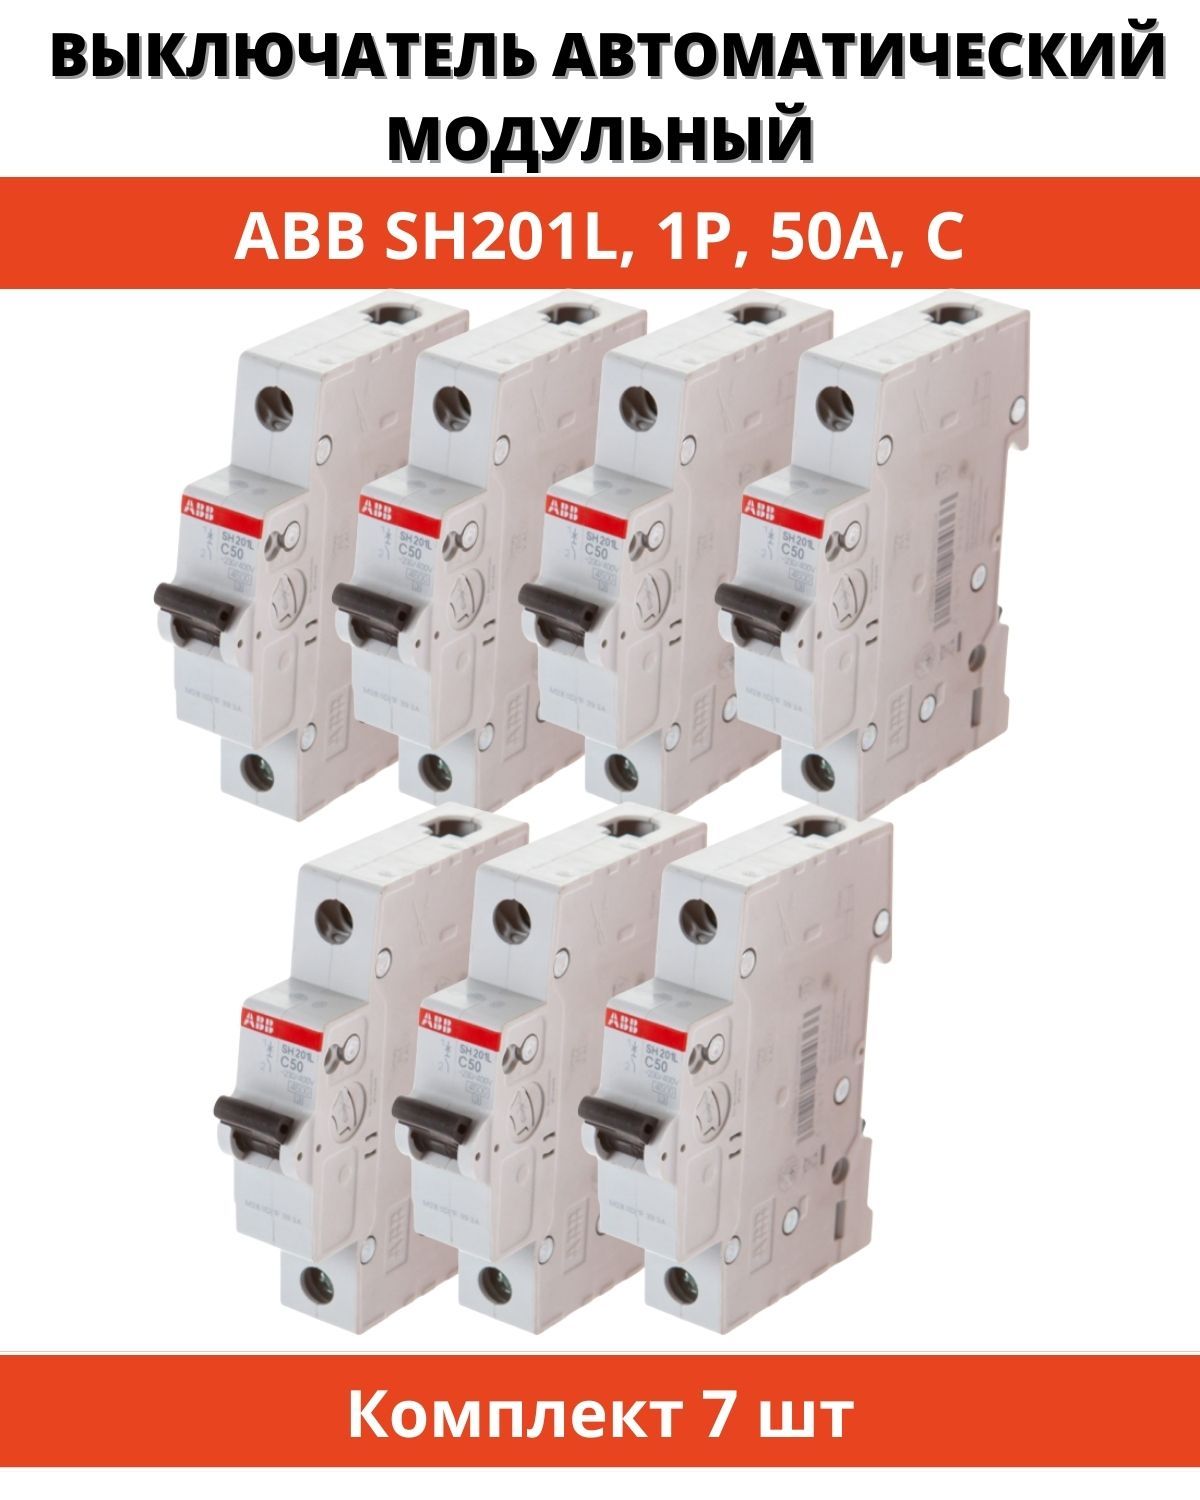 Автоматический выключатель ABB sh201l. АВВ sh201l c10. Автоматический выключатель ABB sh201l c10. Автомат ABB ms116. Купить автоматический выключатель abb